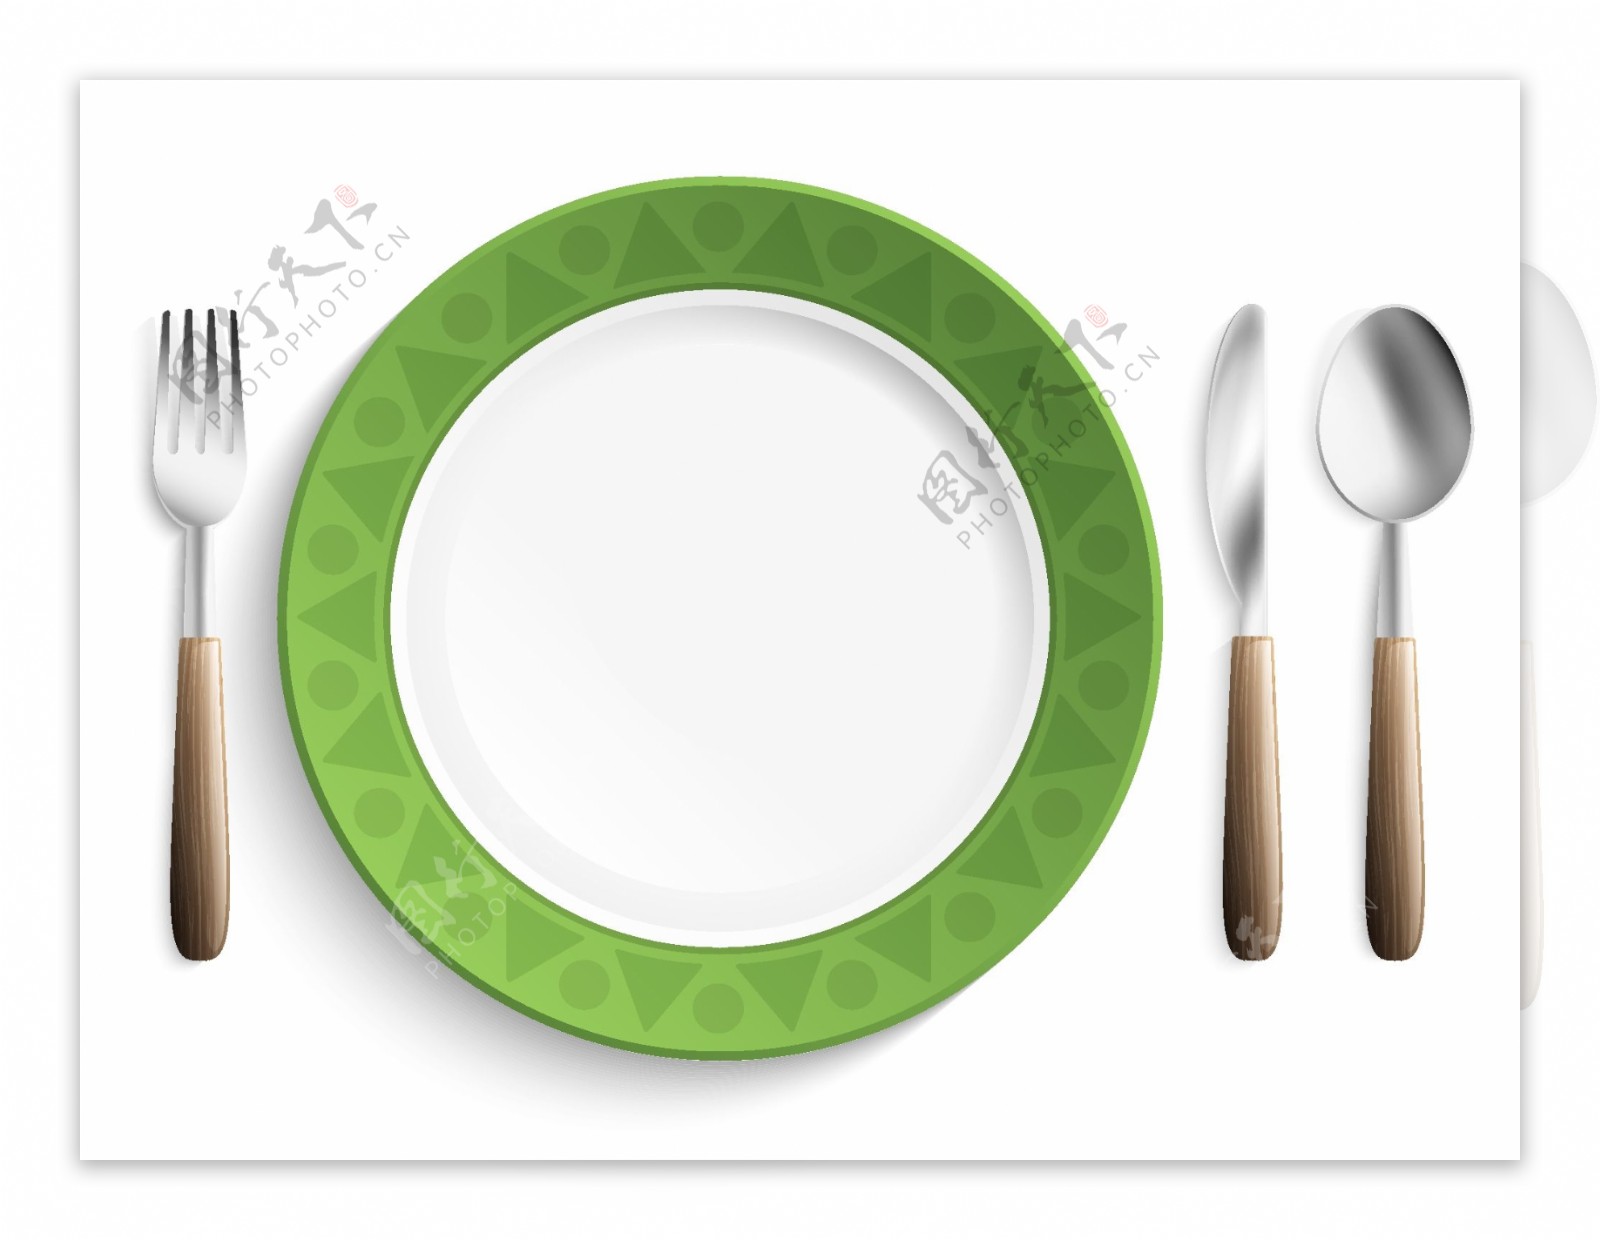 刀叉绿色餐盘矢量素材